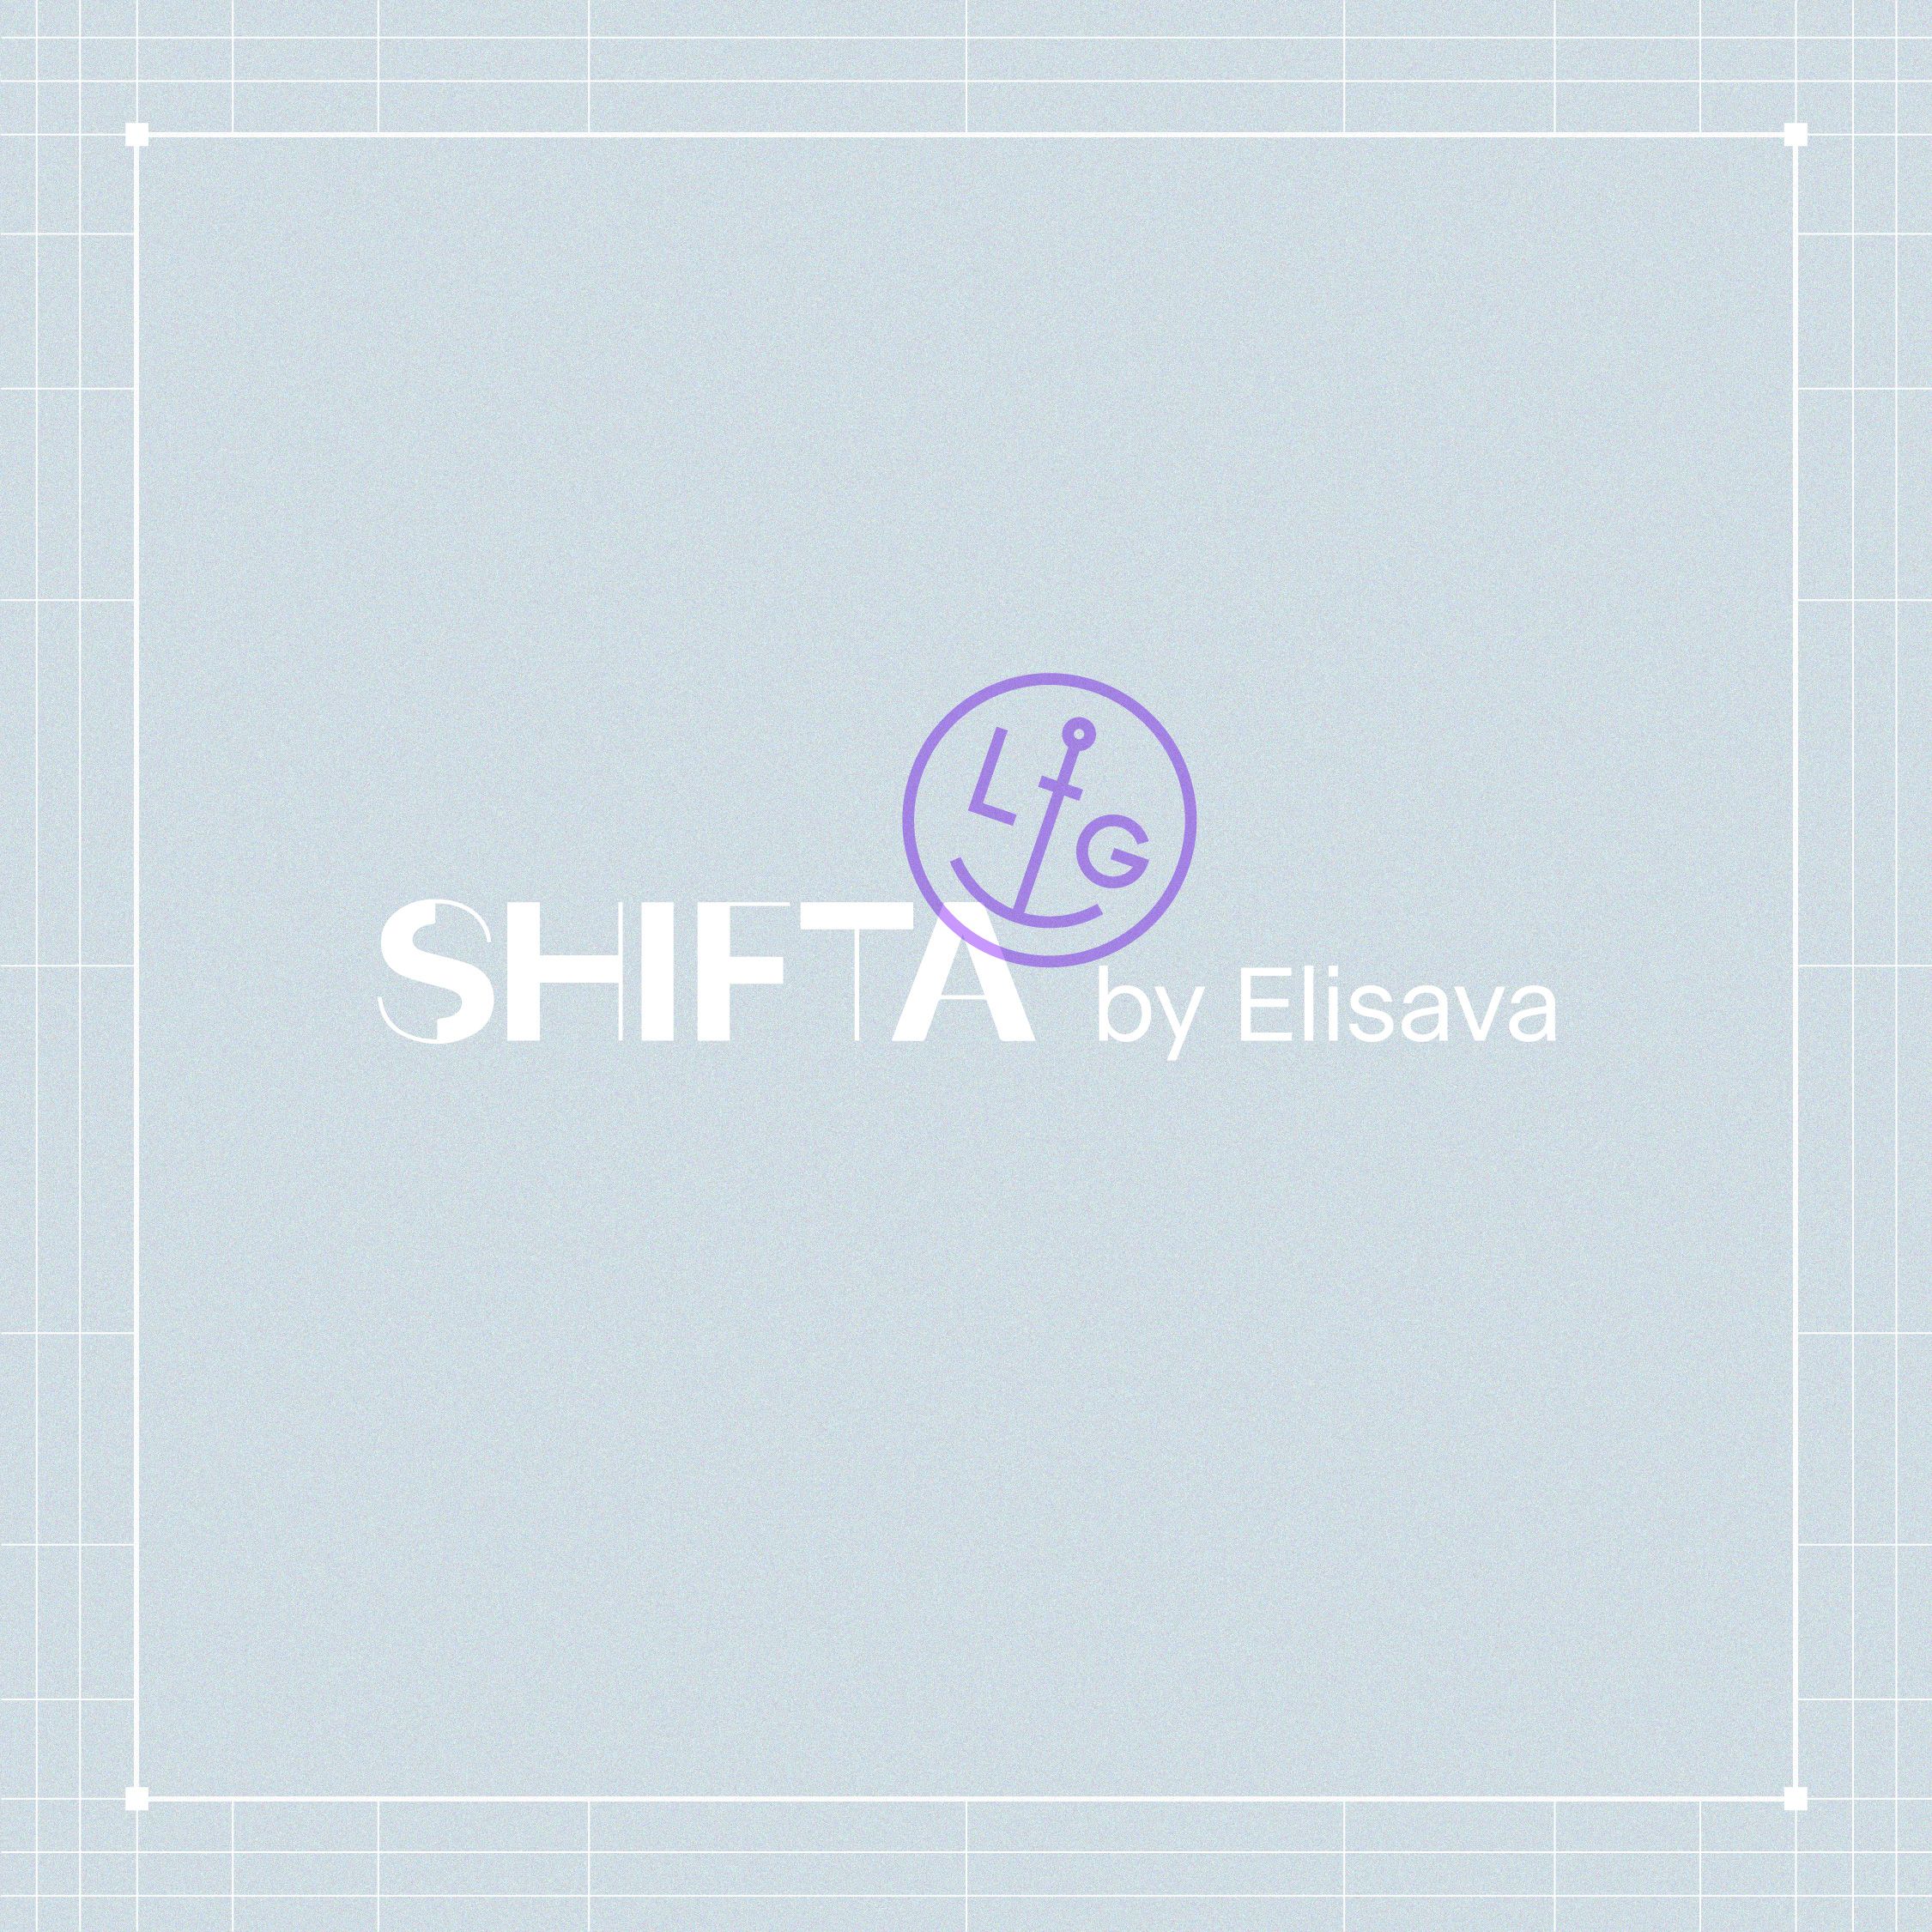 Reinterpretación de la marca SHIFTA by ELISAVA por Lorena G –> Máster Online en Dirección de Arte y Creatividad Audiovisual